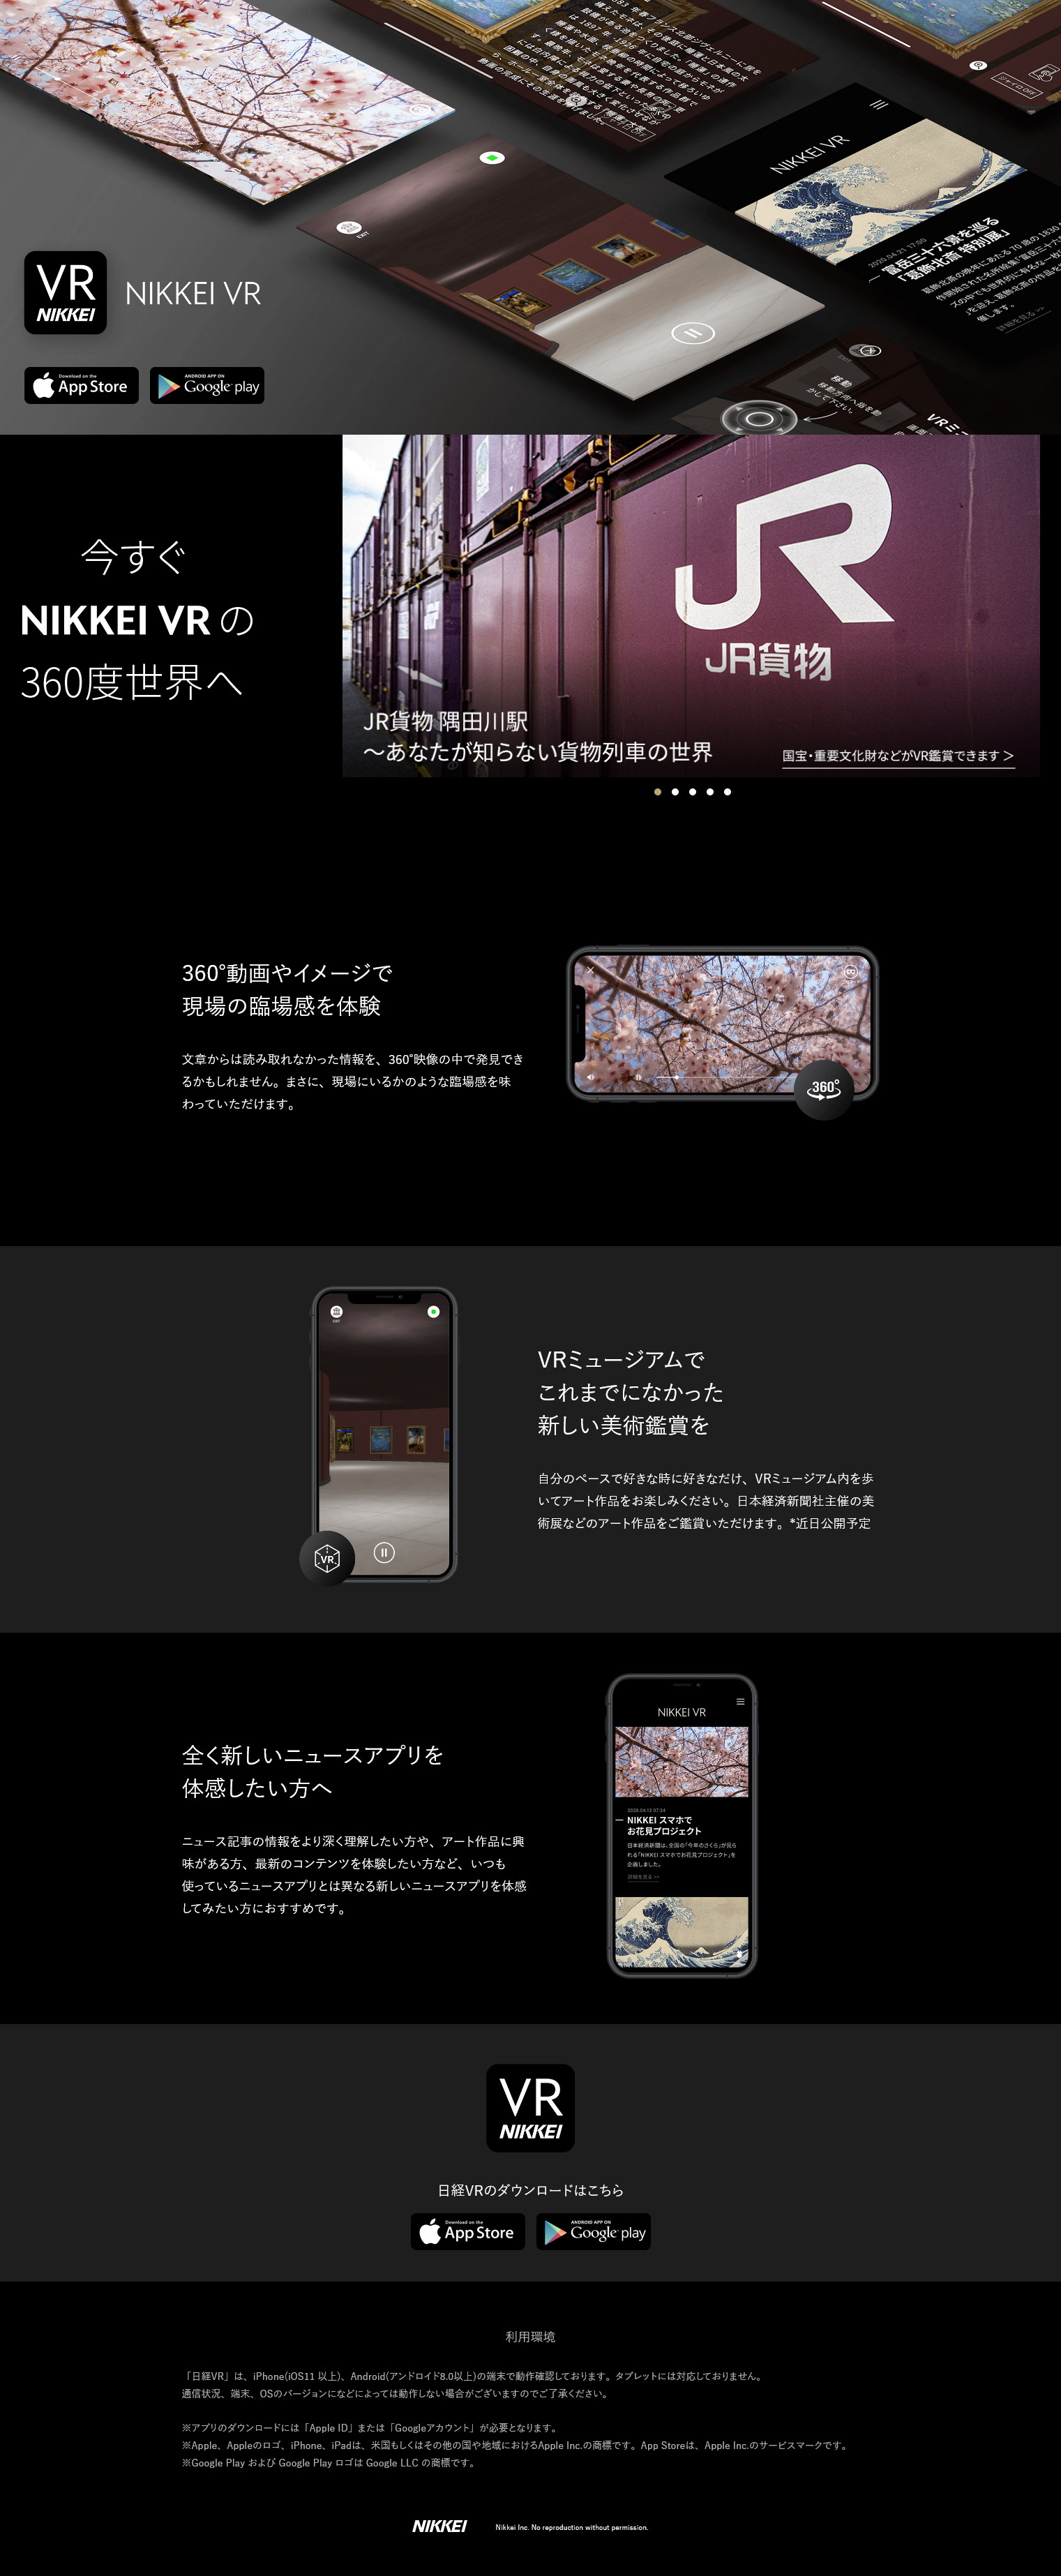 日本経済新聞 VRアプリ